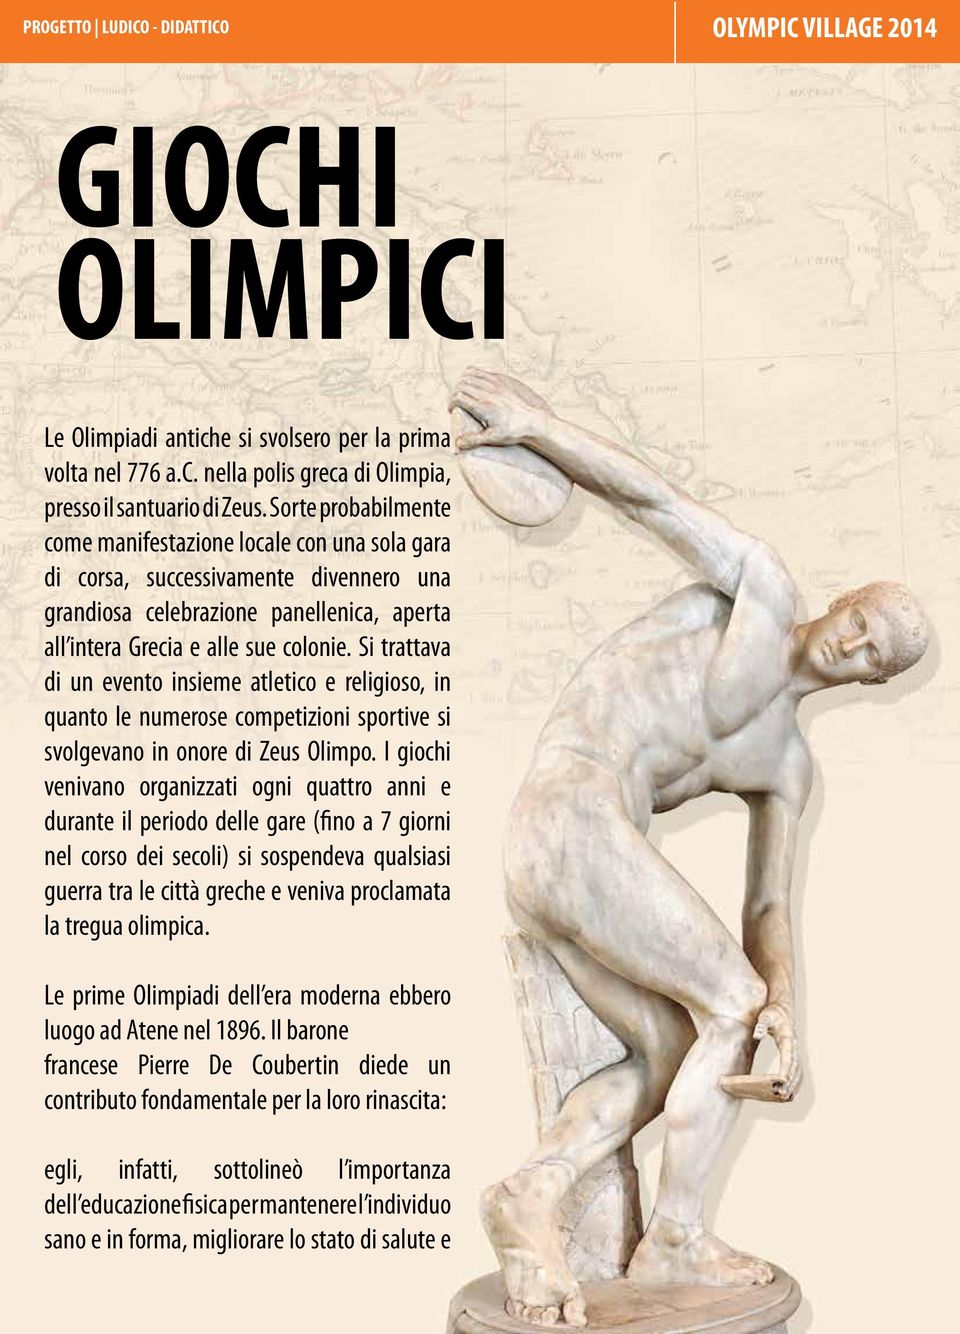 Si trattava di un evento insieme atletico e religioso, in quanto le numerose competizioni sportive si svolgevano in onore di Zeus Olimpo.